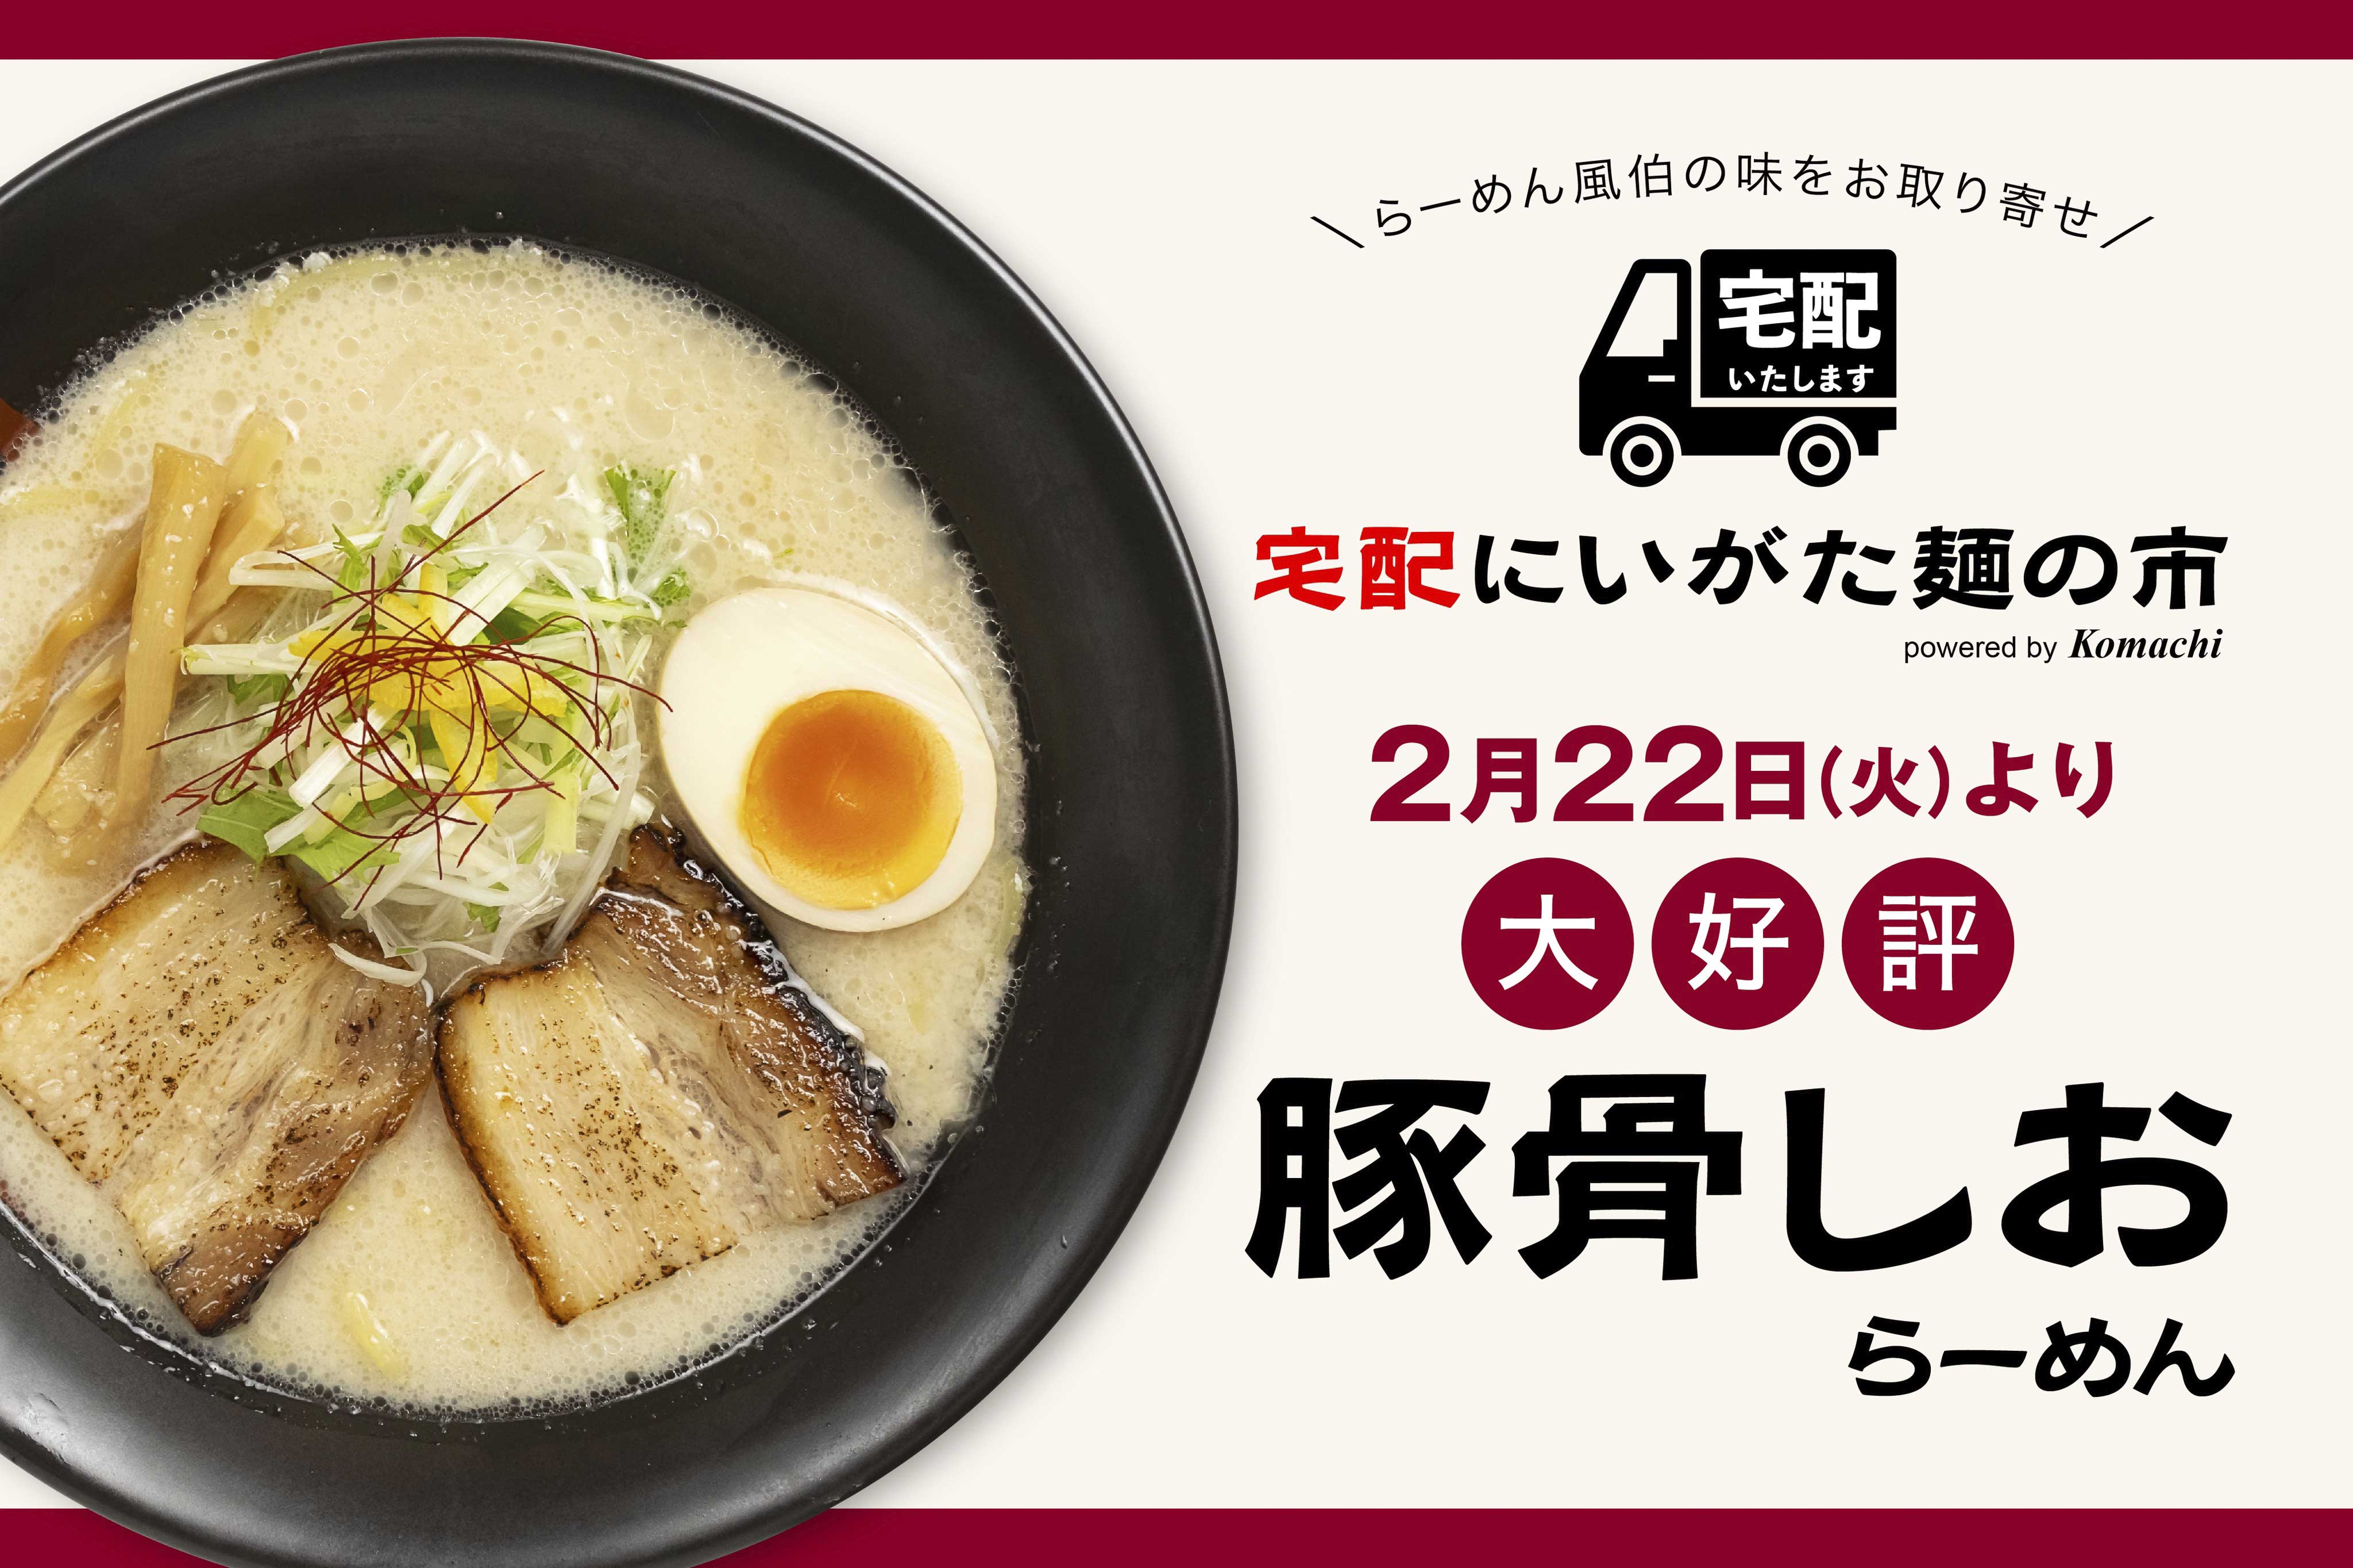 2月22日(火)より販売開始【宅配にいがた麺の市】